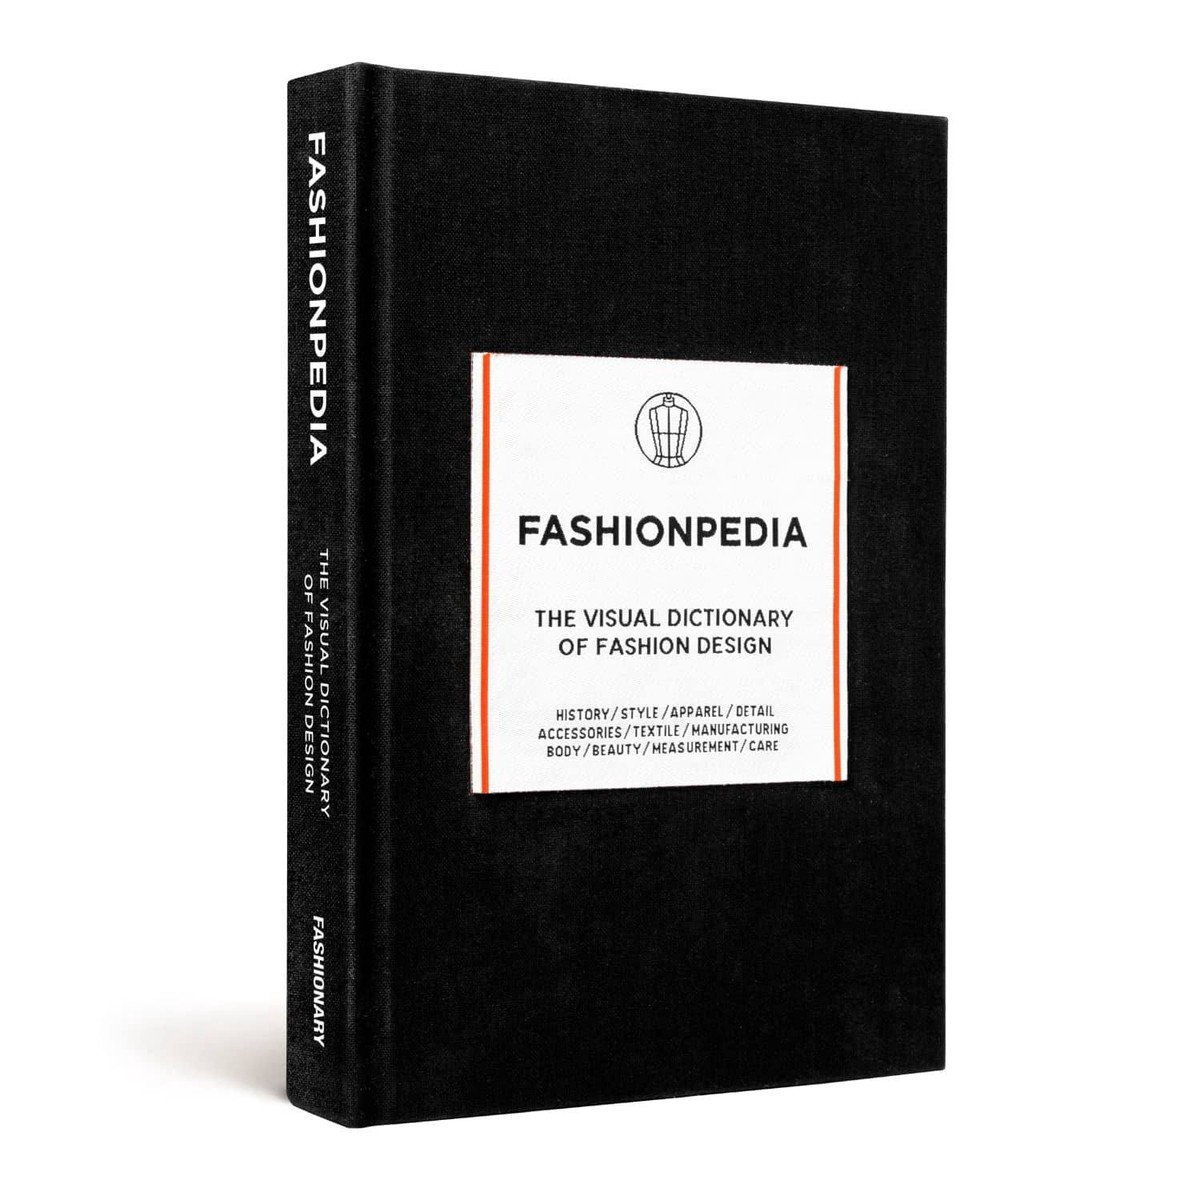 Fashionpedia - Fashionary